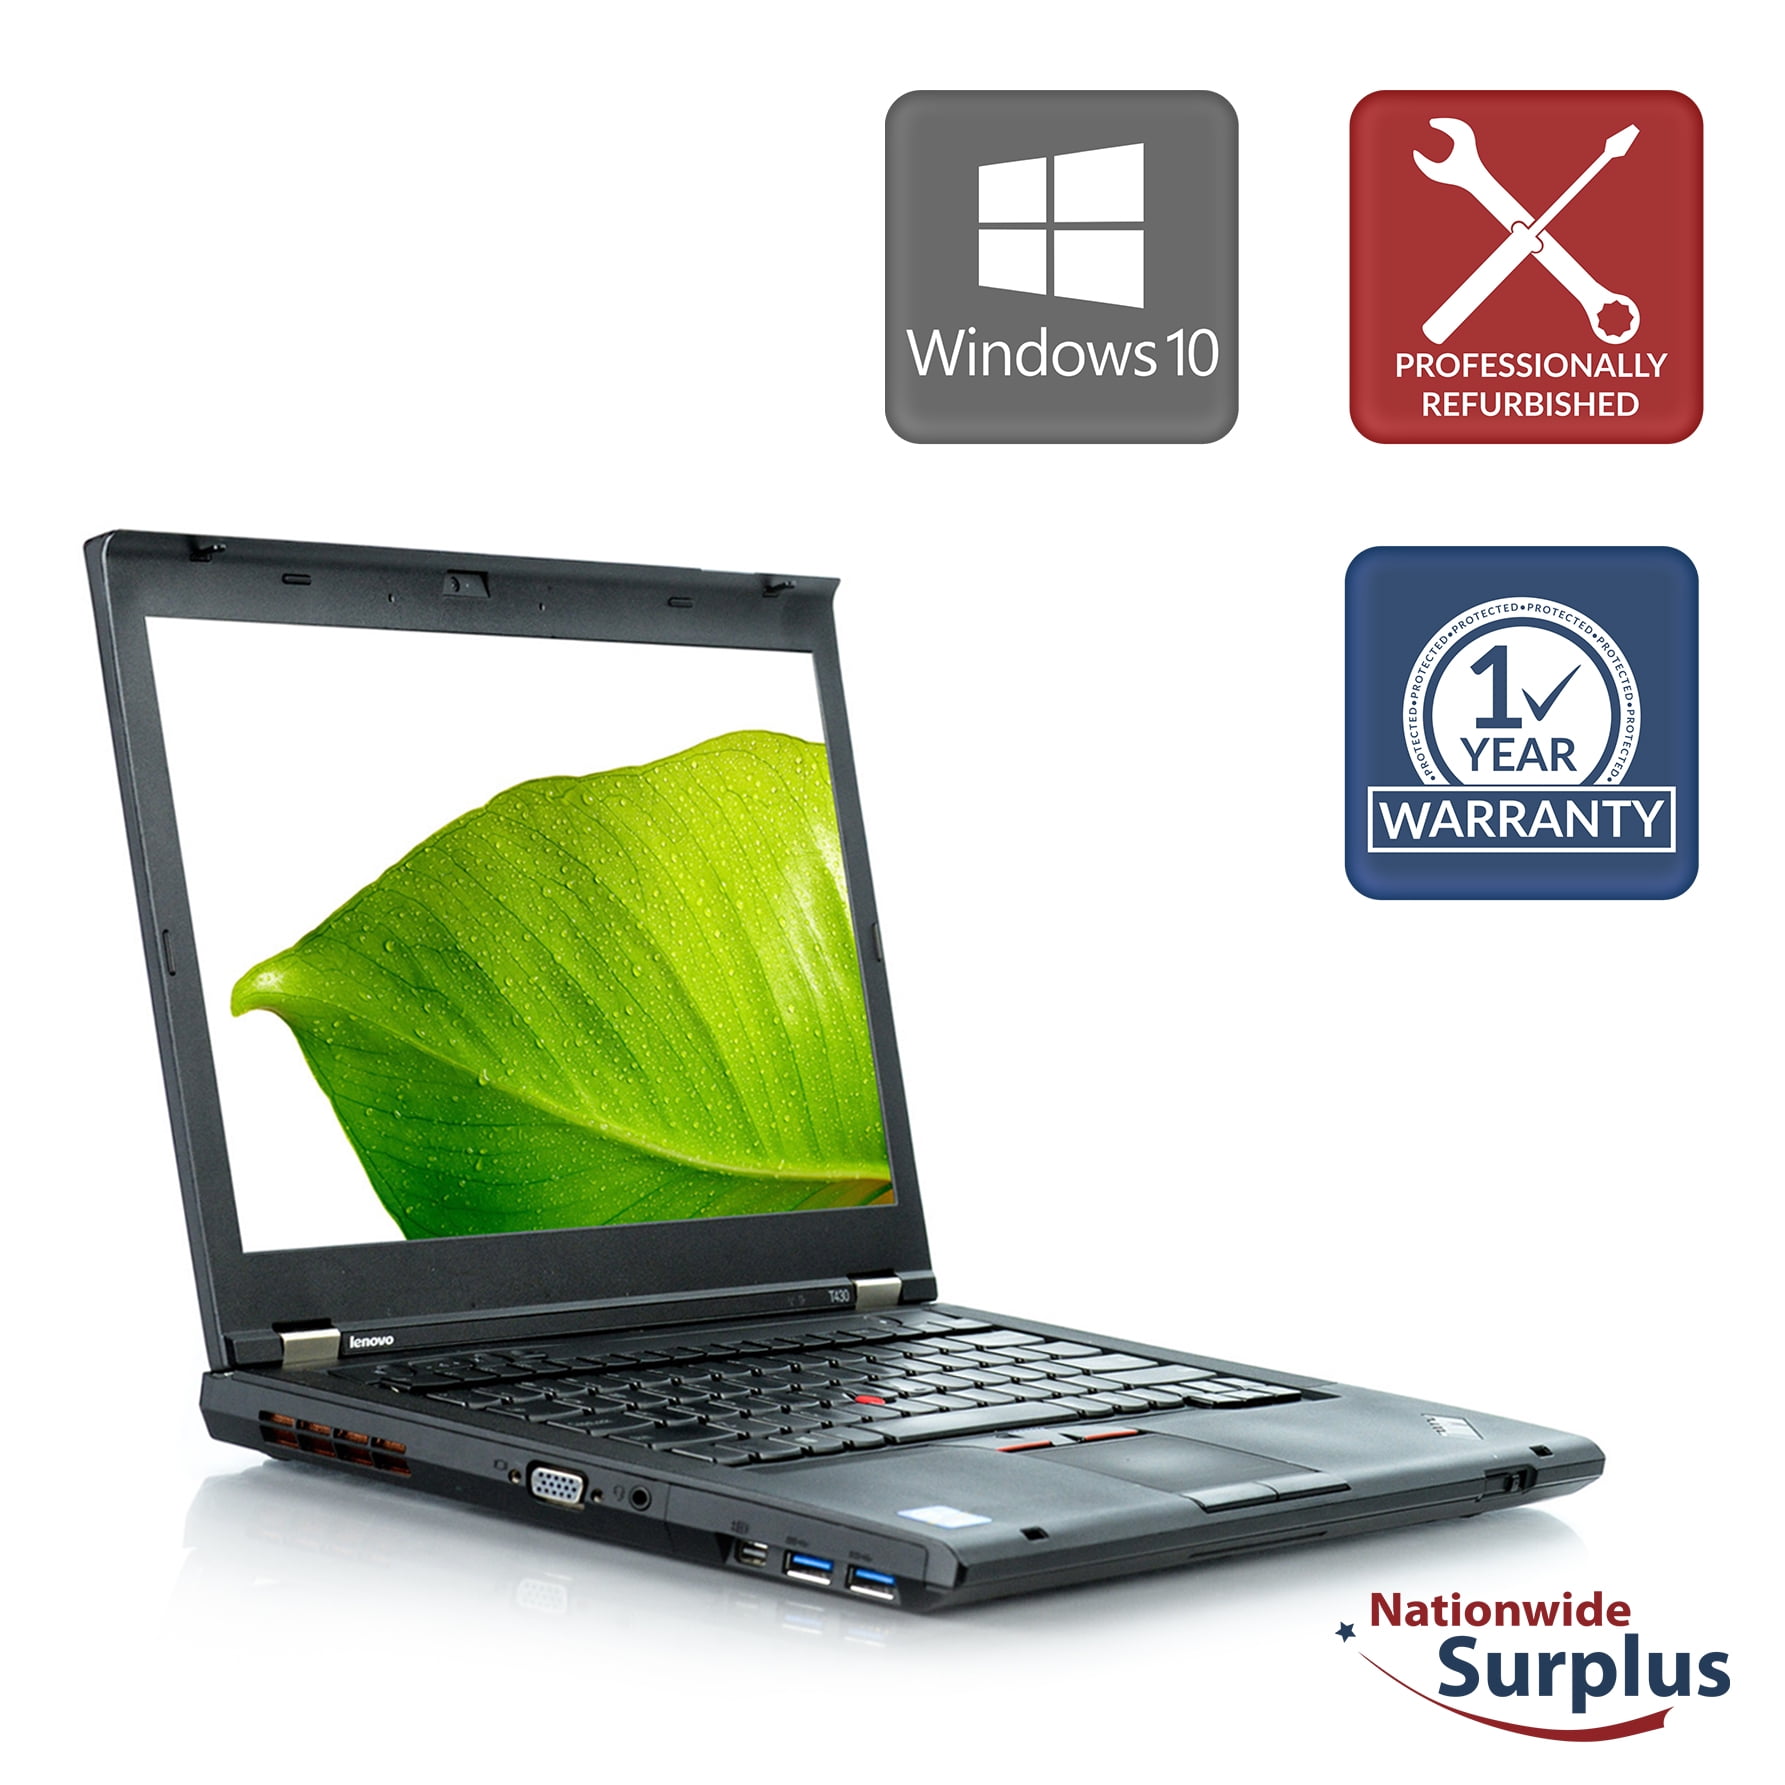 sæt Staple eksplicit Used Lenovo ThinkPad T430 Laptop i5-3320M 8GB 120GB SSD Win 10 Pro -  Walmart.com